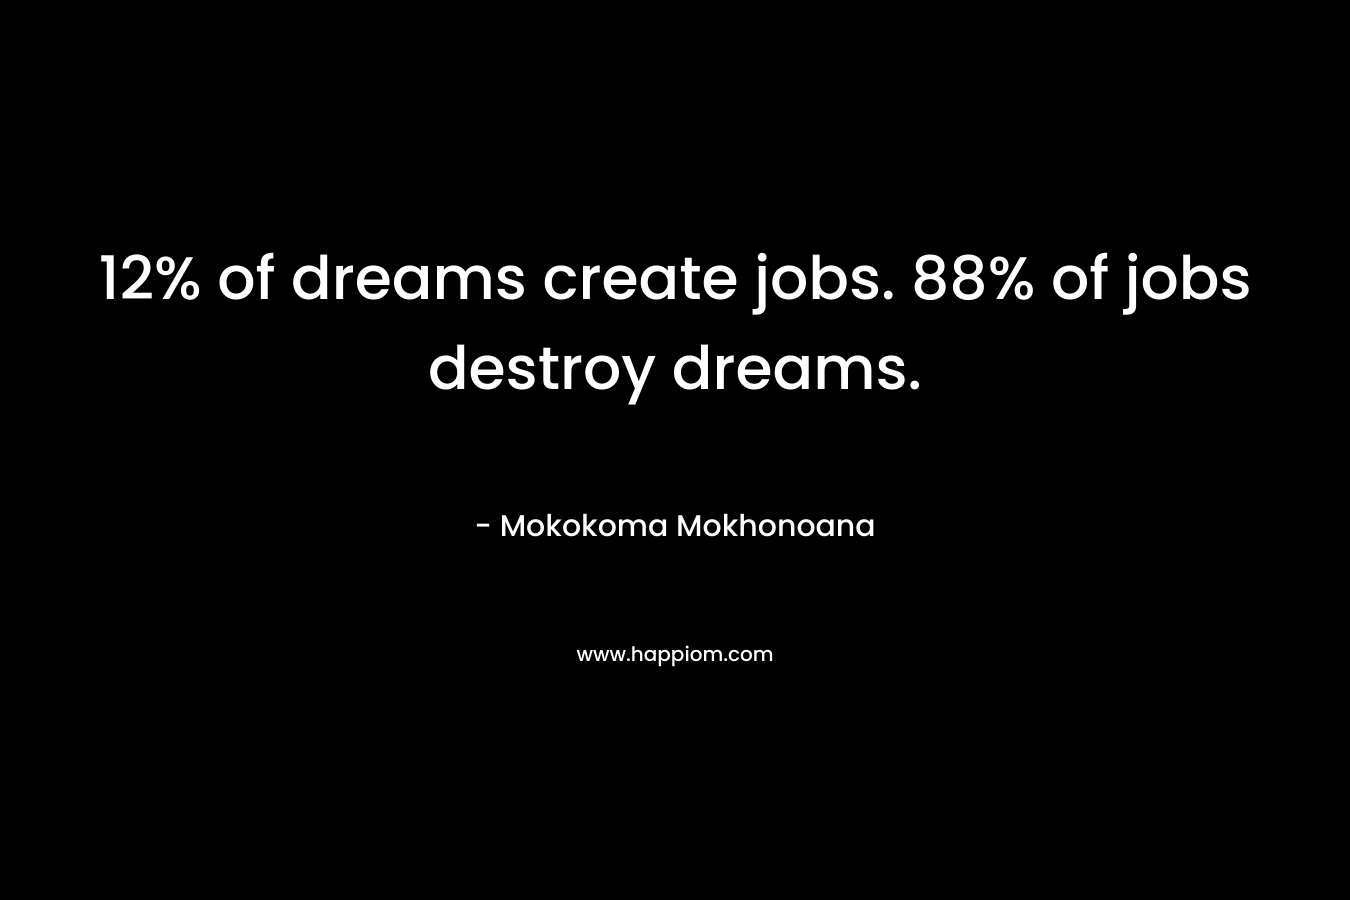 12% of dreams create jobs. 88% of jobs destroy dreams.